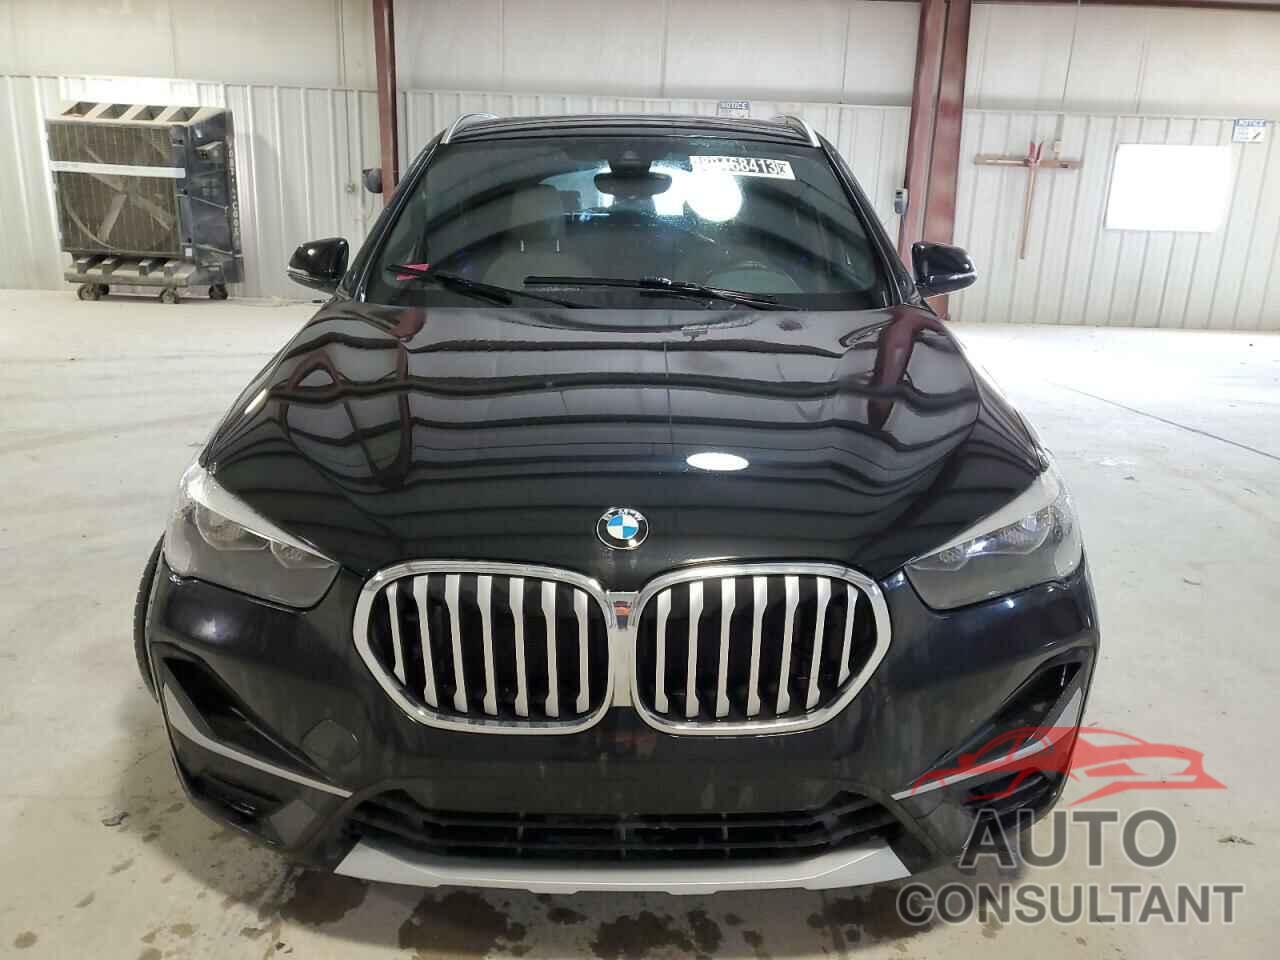 BMW X1 2022 - WBXJG7C09N5V40805